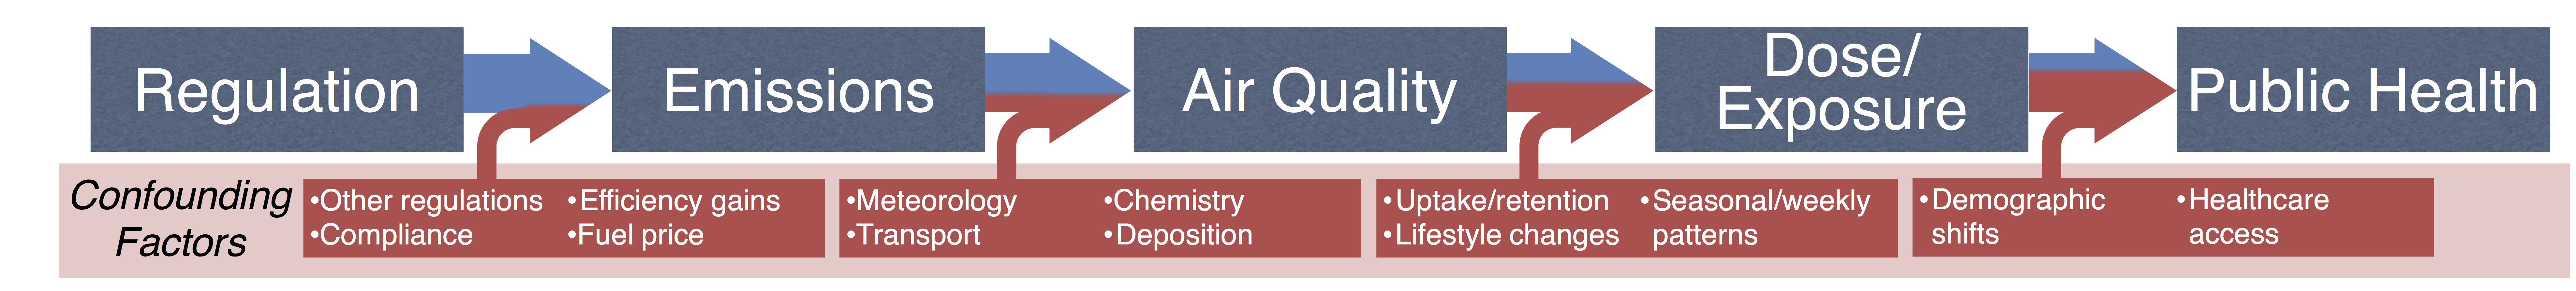 Air Pollution Accountability Chain